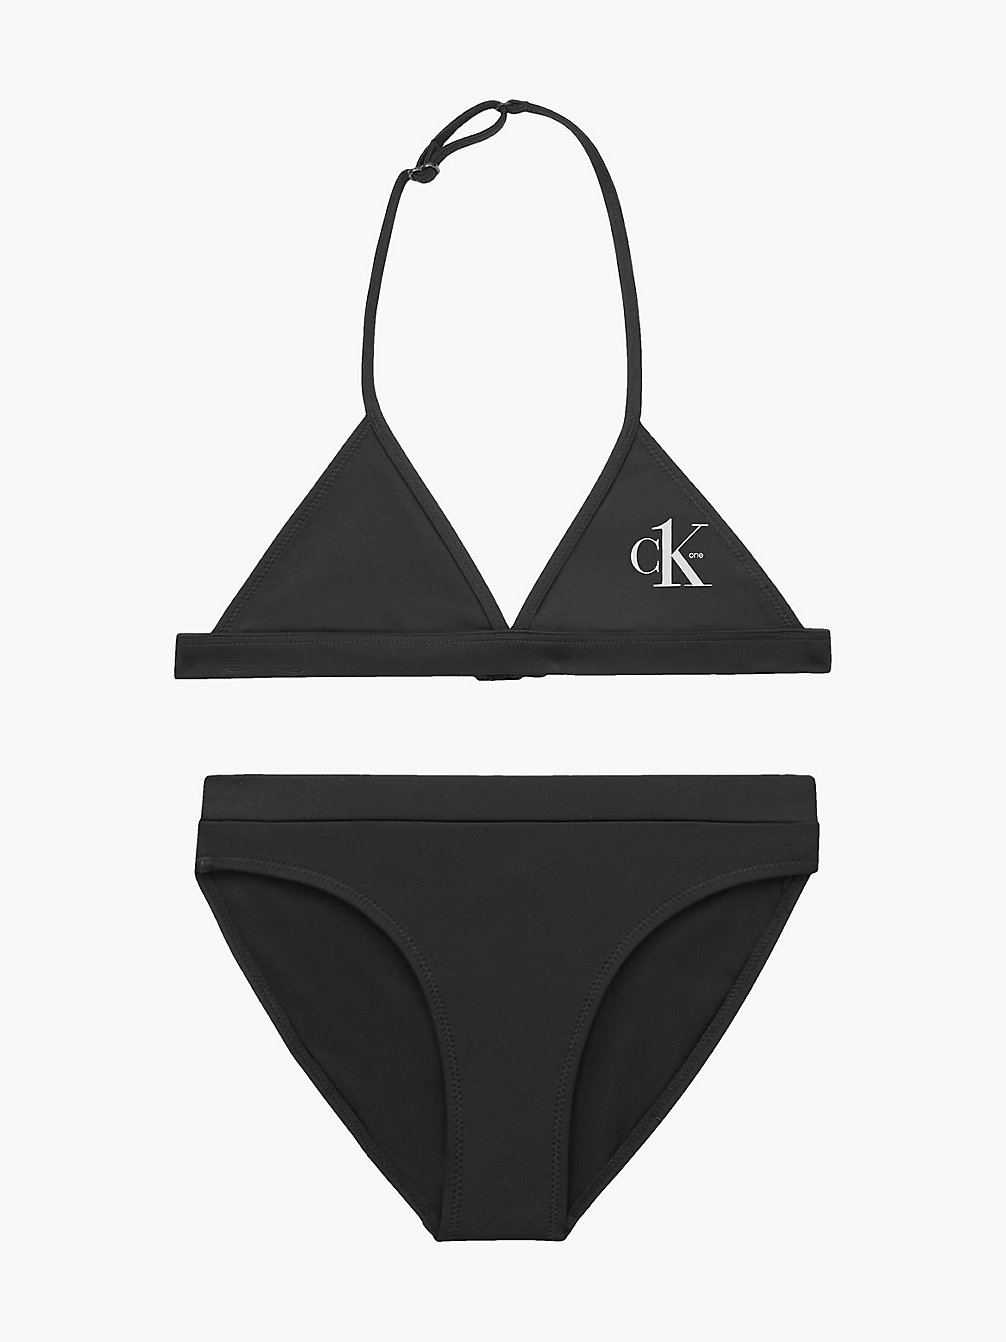 PVH BLACK Girls Triangle Bikini Set - CK One undefined girls Calvin Klein